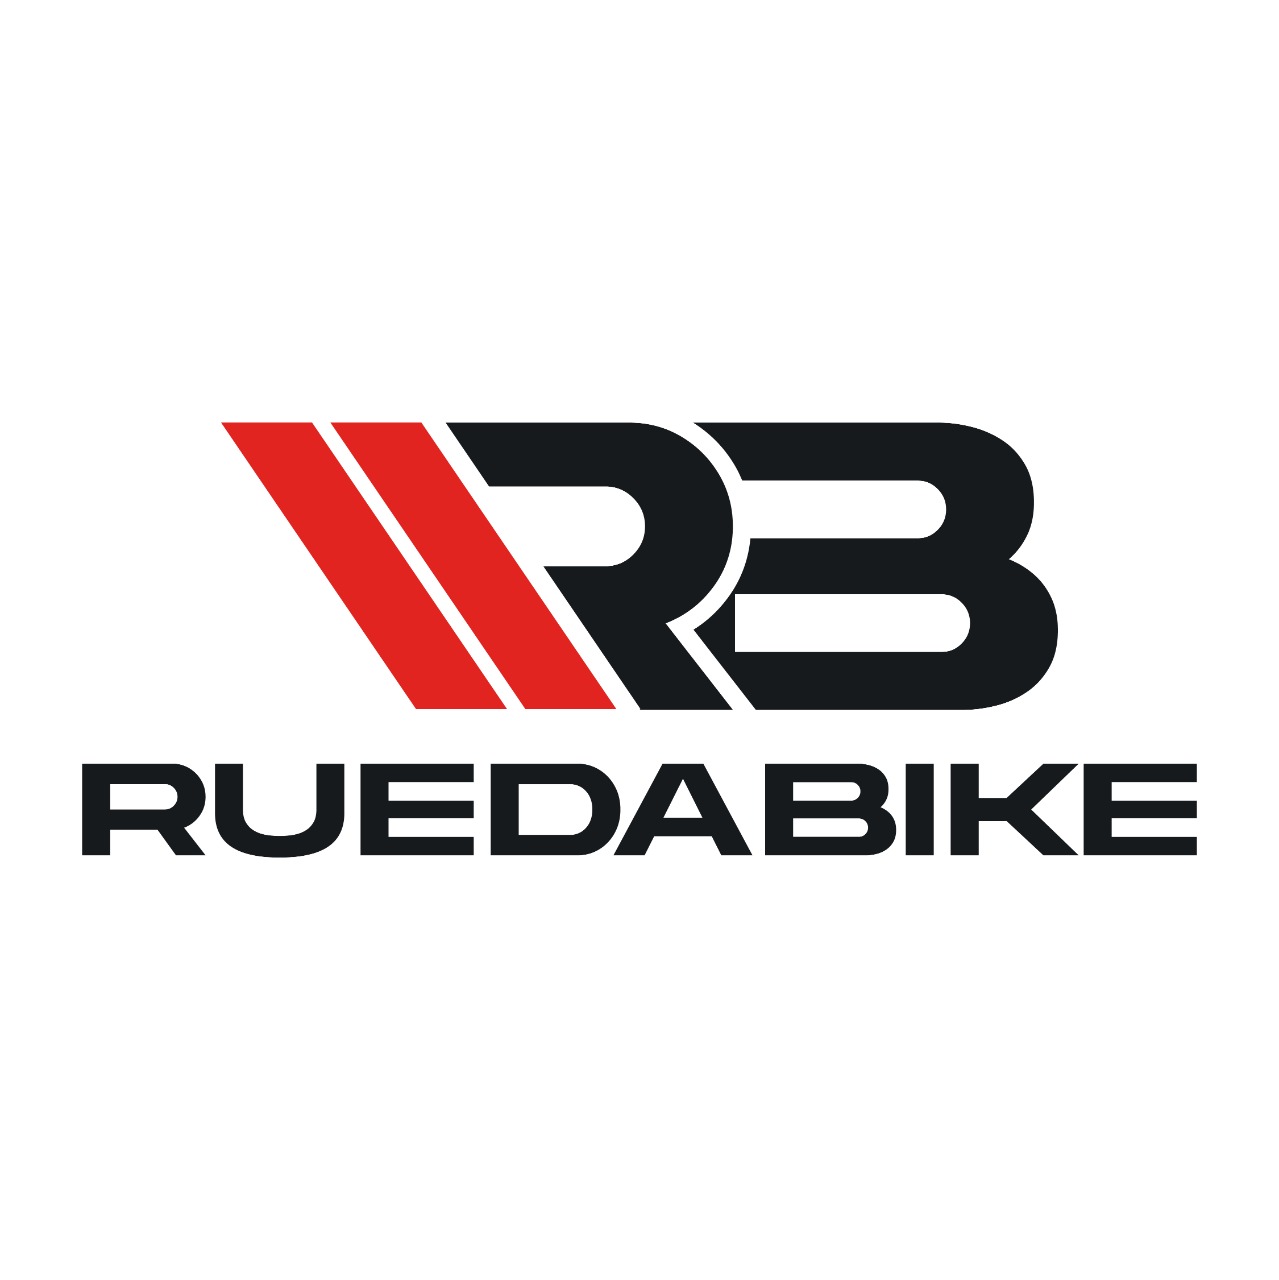 Rueda Bike